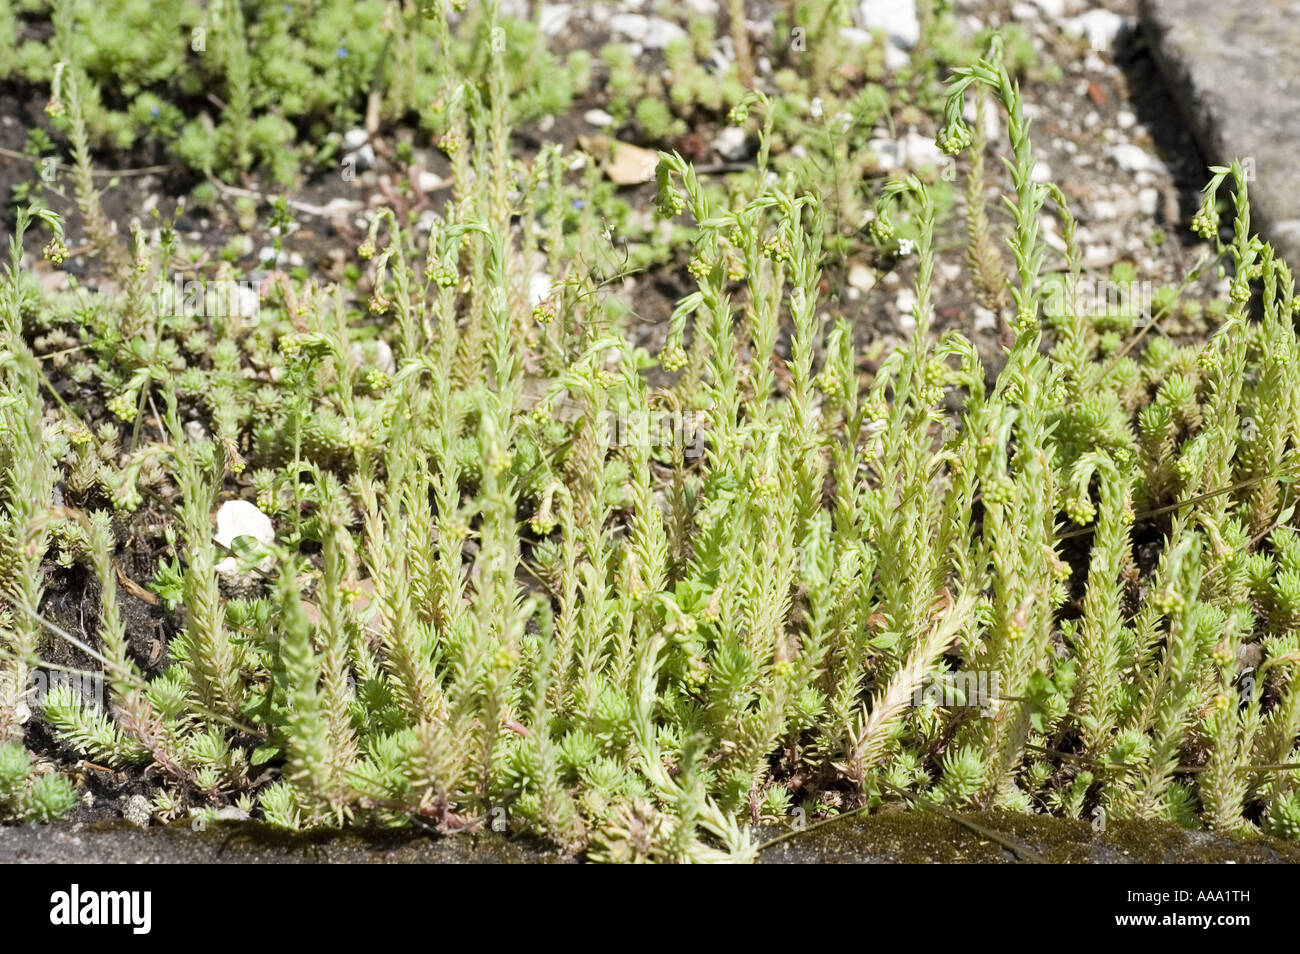 Rock Stonecrop -Crassulaceae - Sedum forsteranum or forsterianum Stock Photo